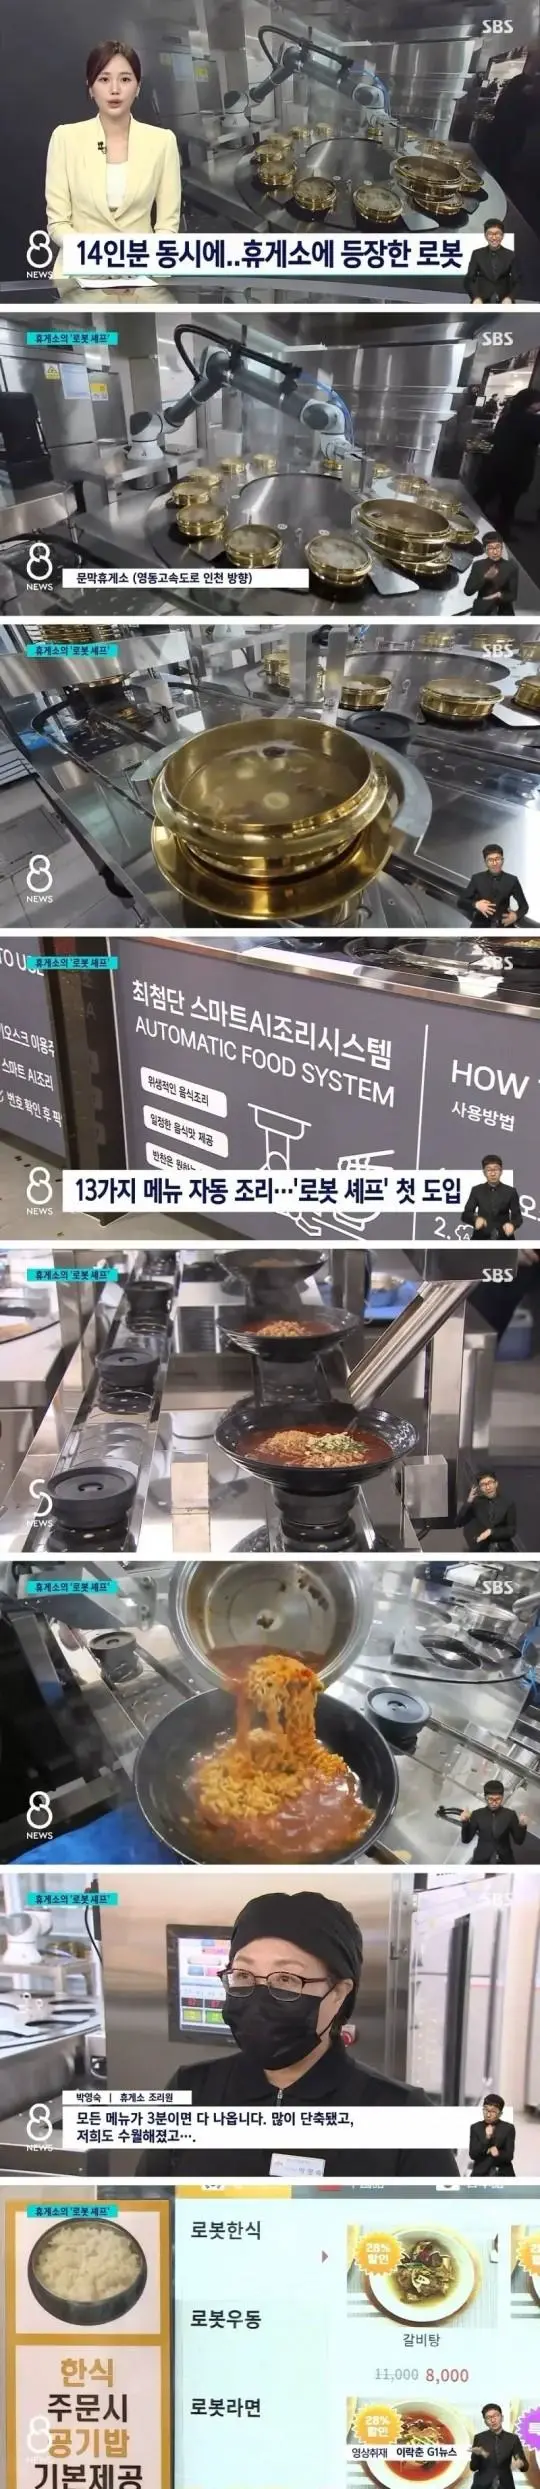 특이점이 온 휴게소 음식 조리법 | mbong.kr 엠봉